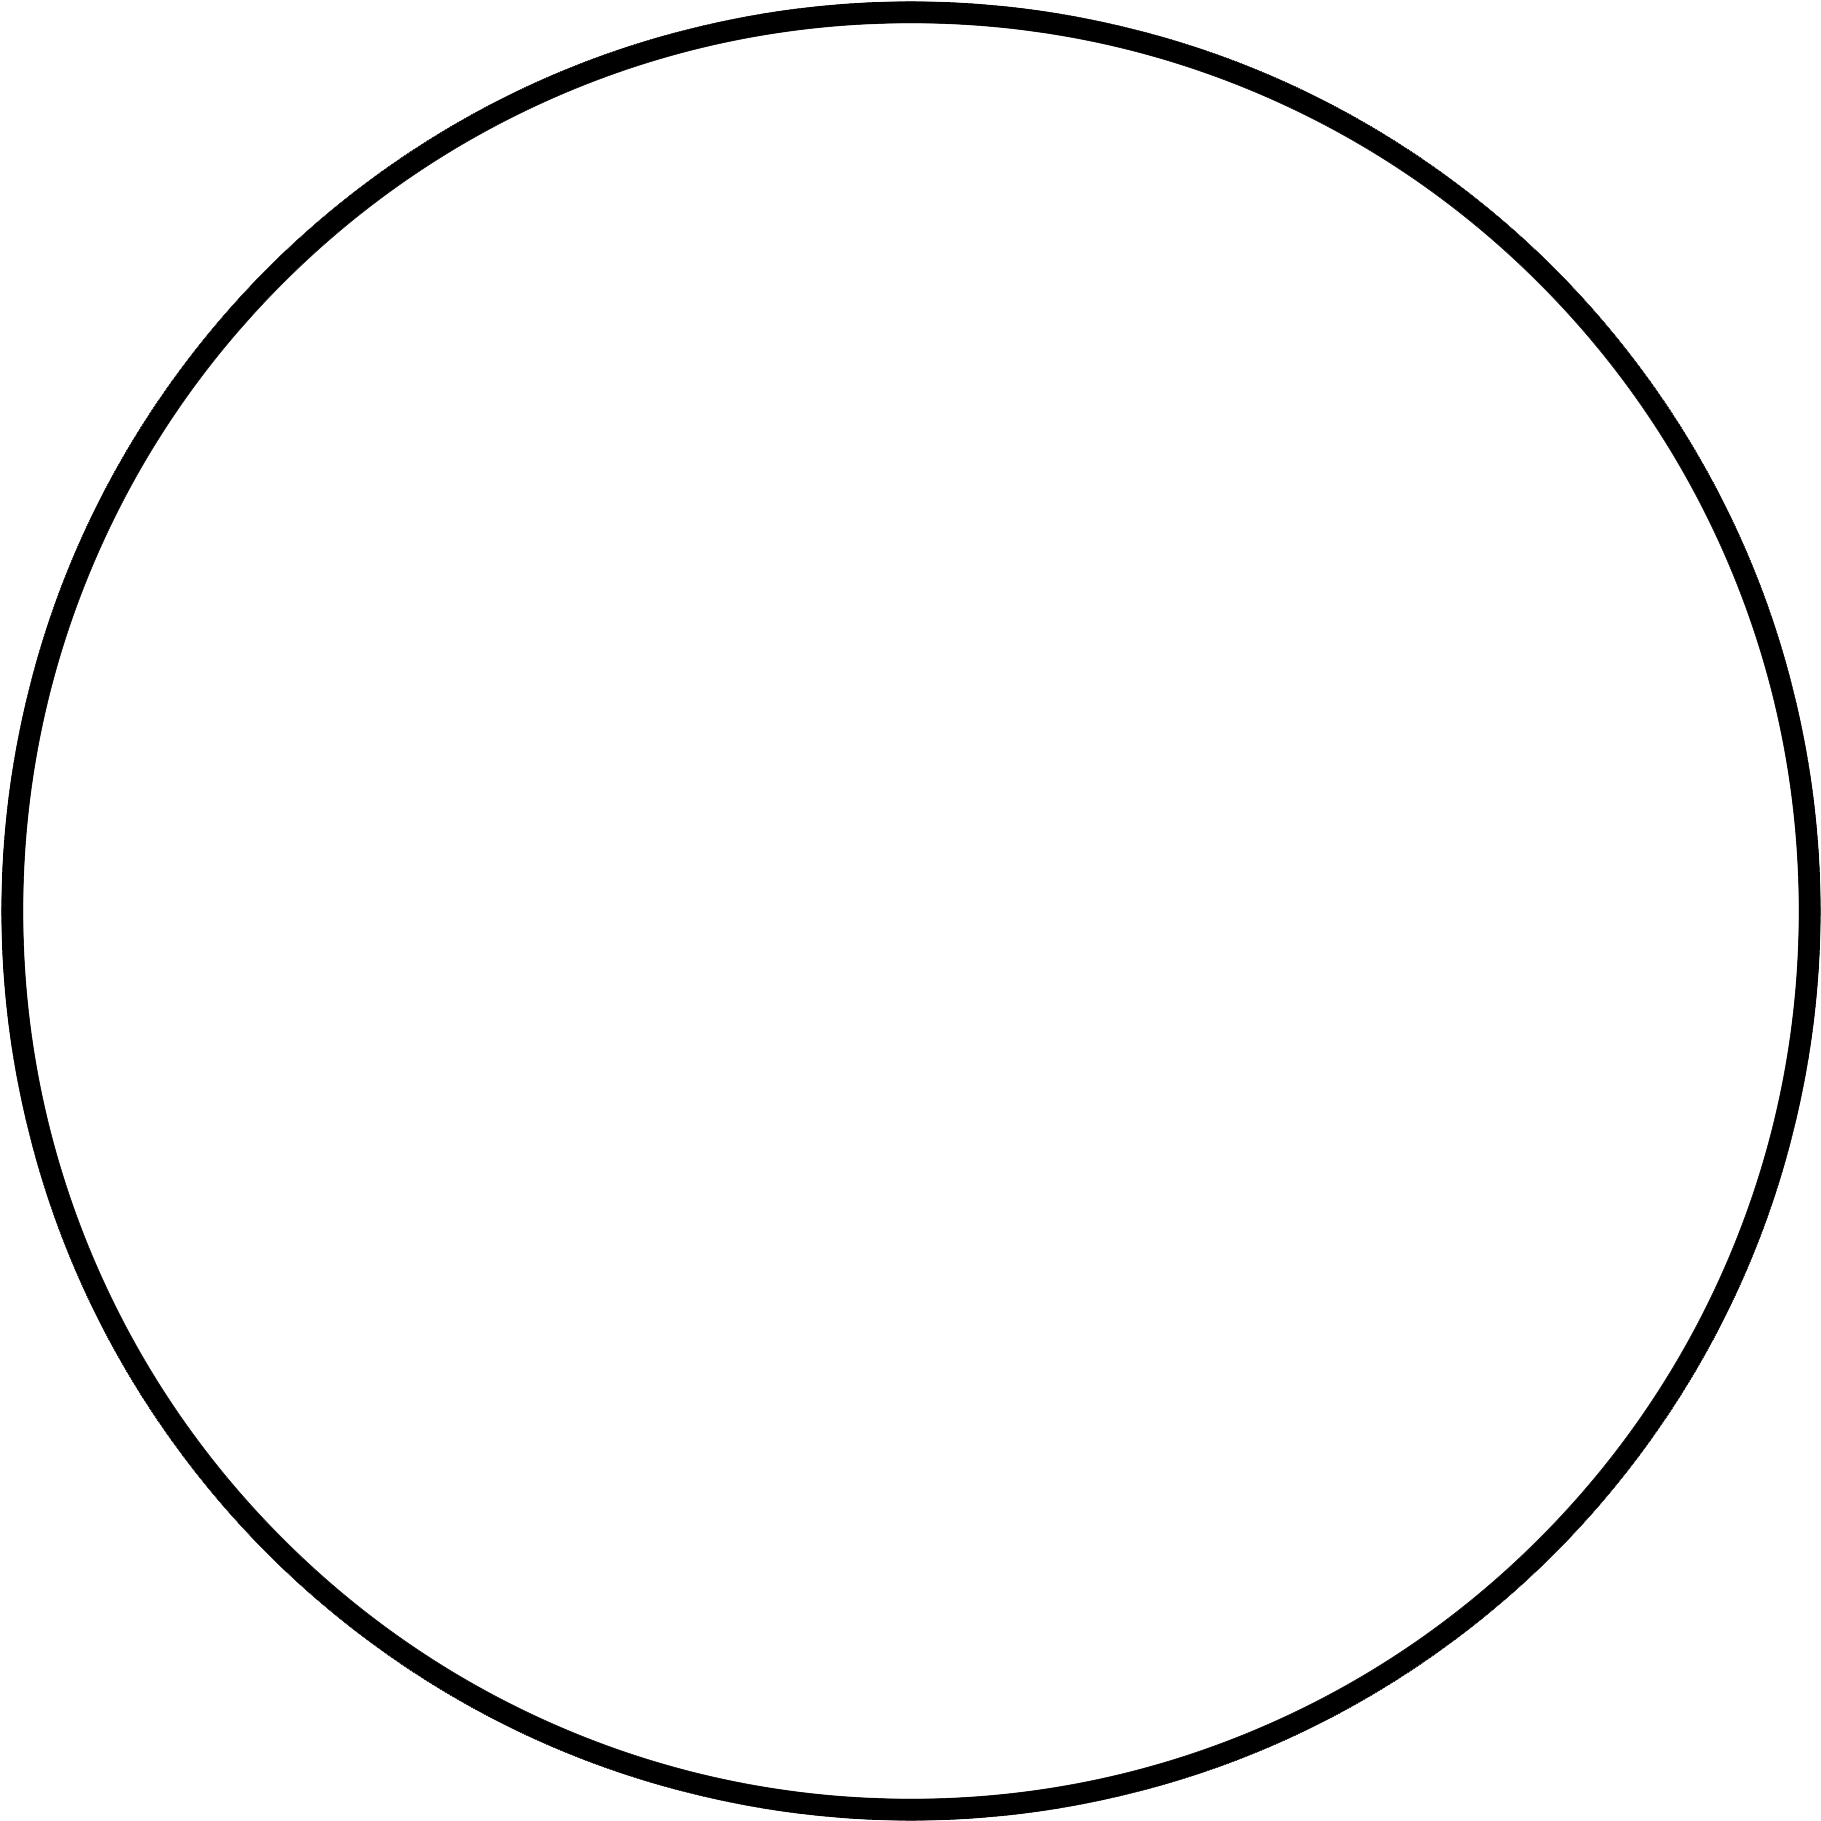 Circle Clipart - Poligono De 18 Lados (1950x1950)